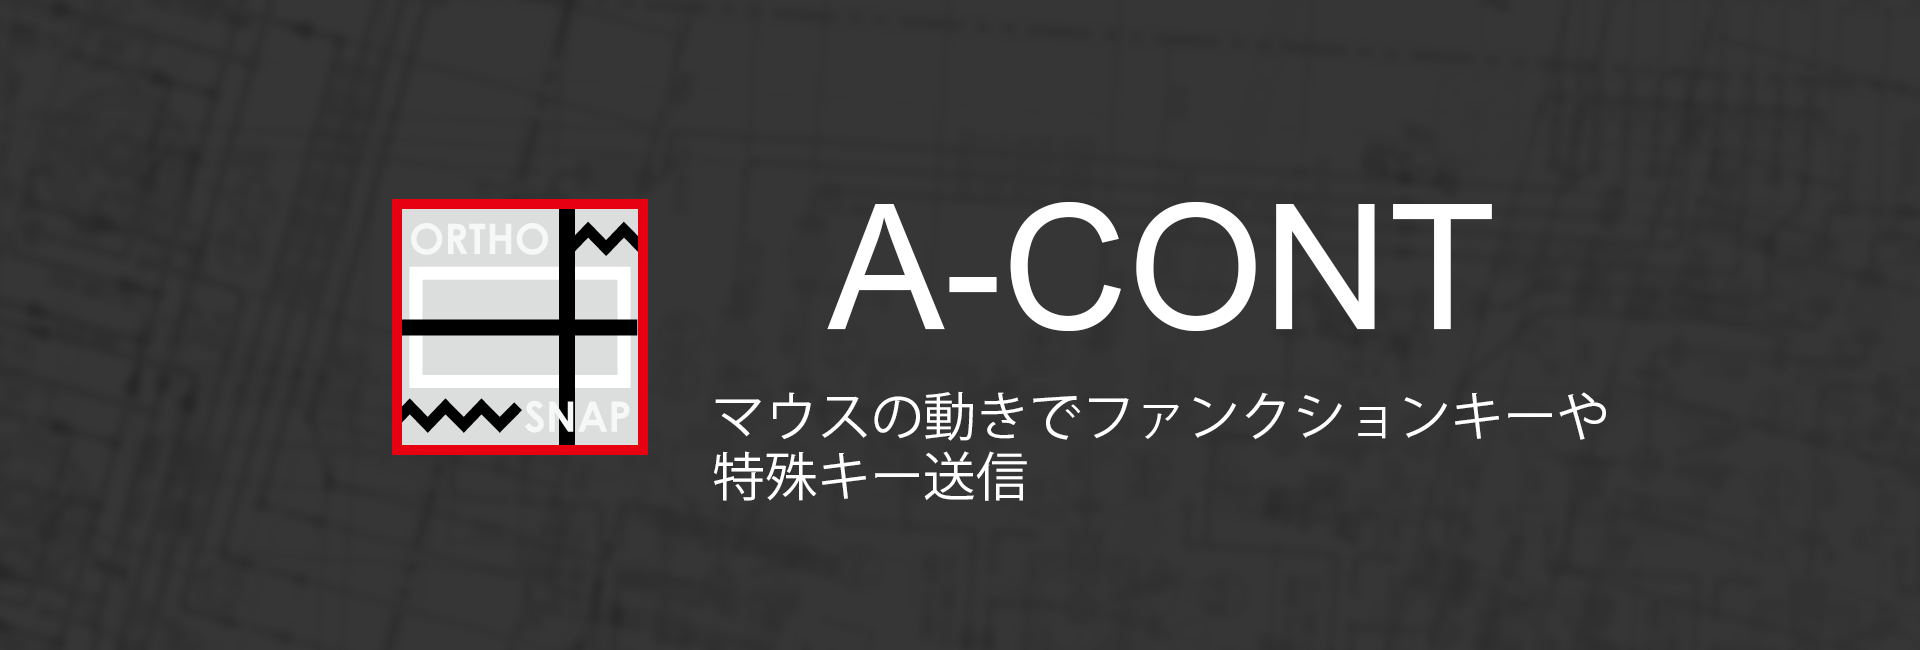 A-CONT